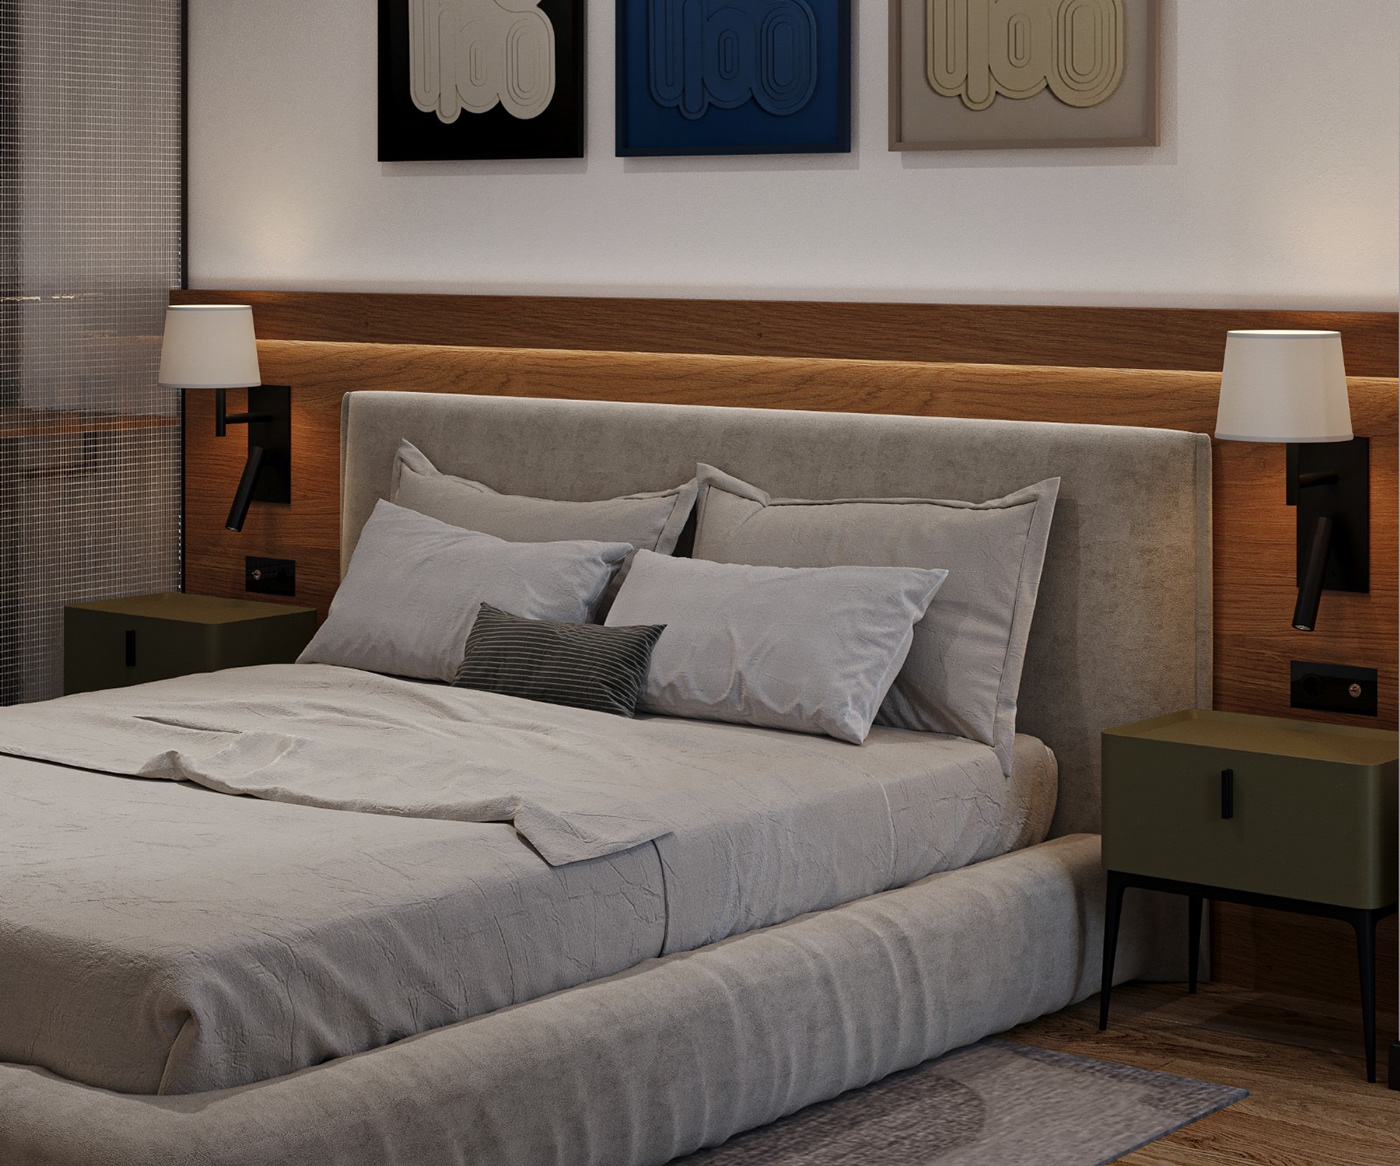 interior design  architecture Render visualization 3D contemporary cozy Retro dutch